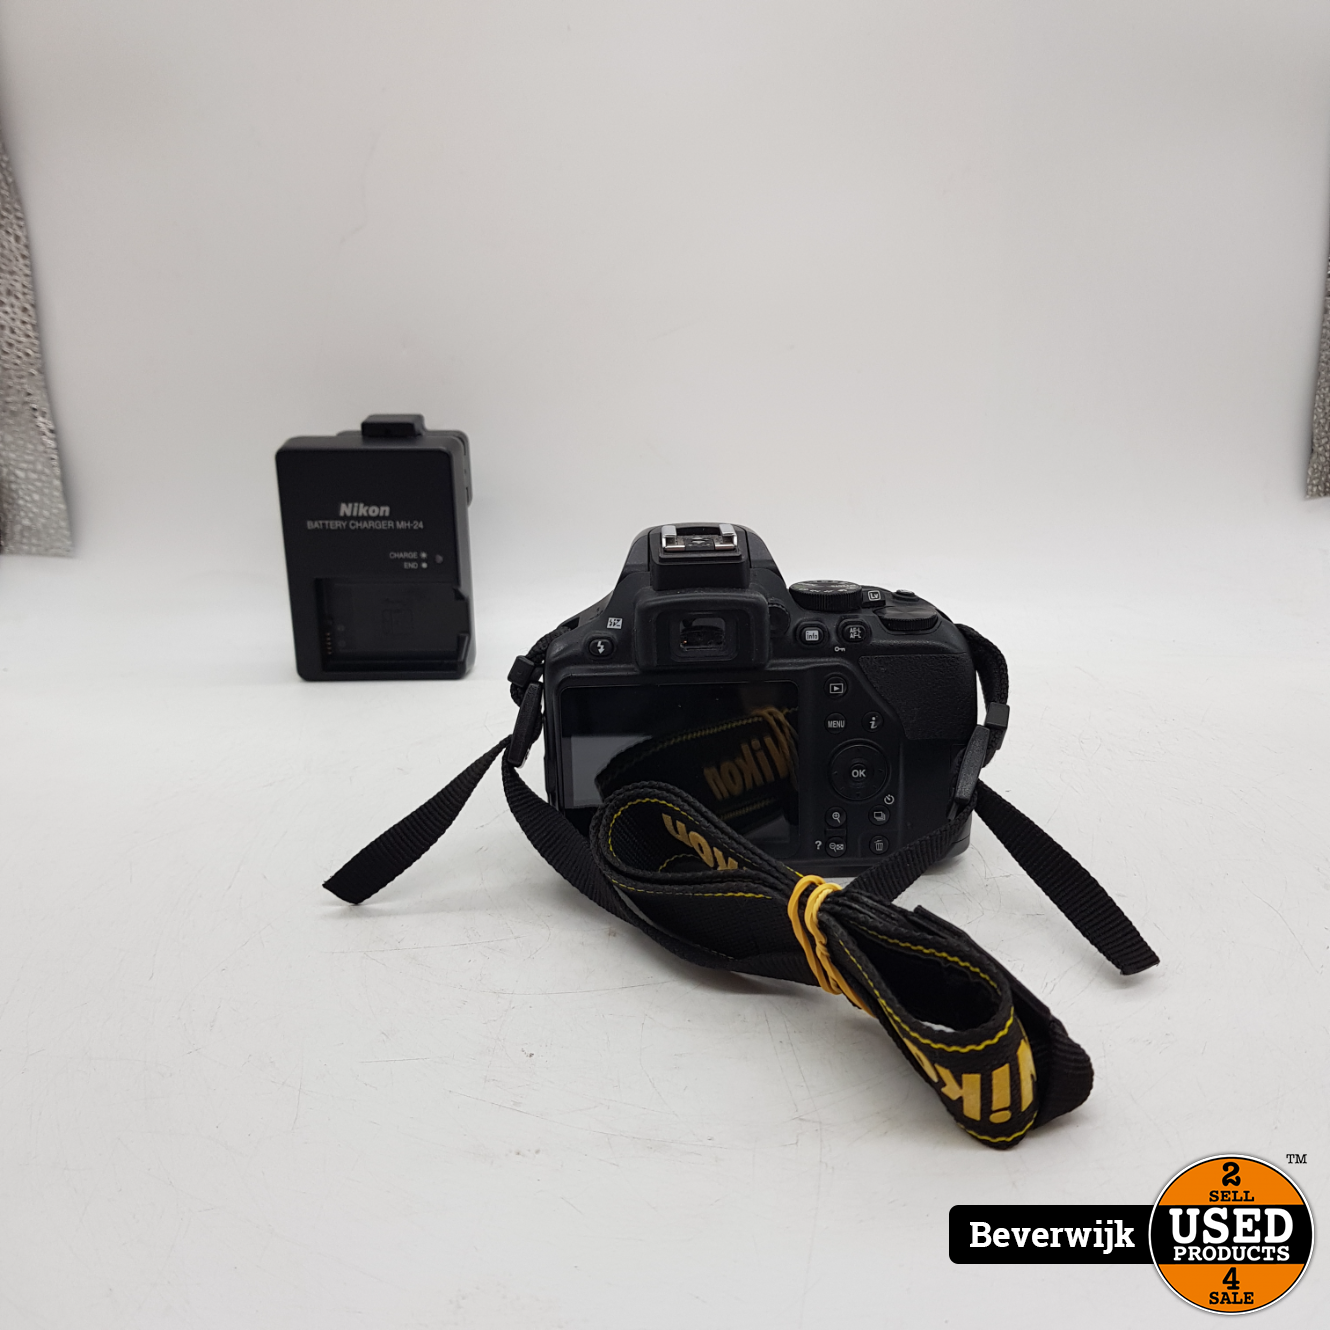 Verloren hart afvoer Uitgebreid Nikon B3500 24.2 Megapixel Full HD Foto Camera - In Goede Staat - Used  Products Beverwijk